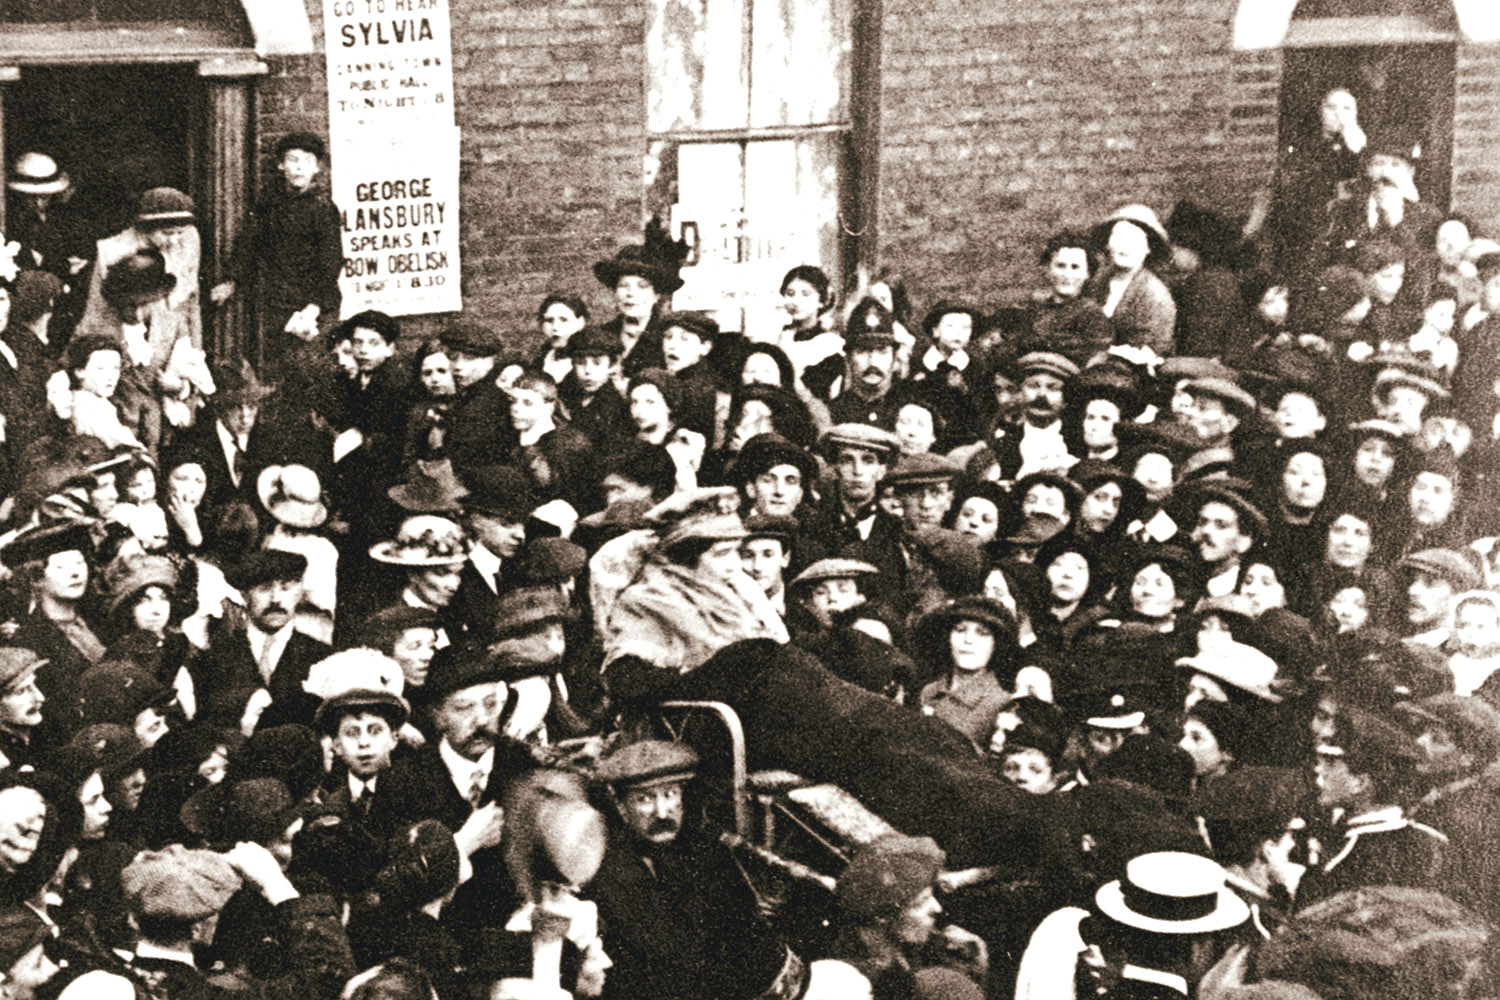 Suffragette_background.jpg